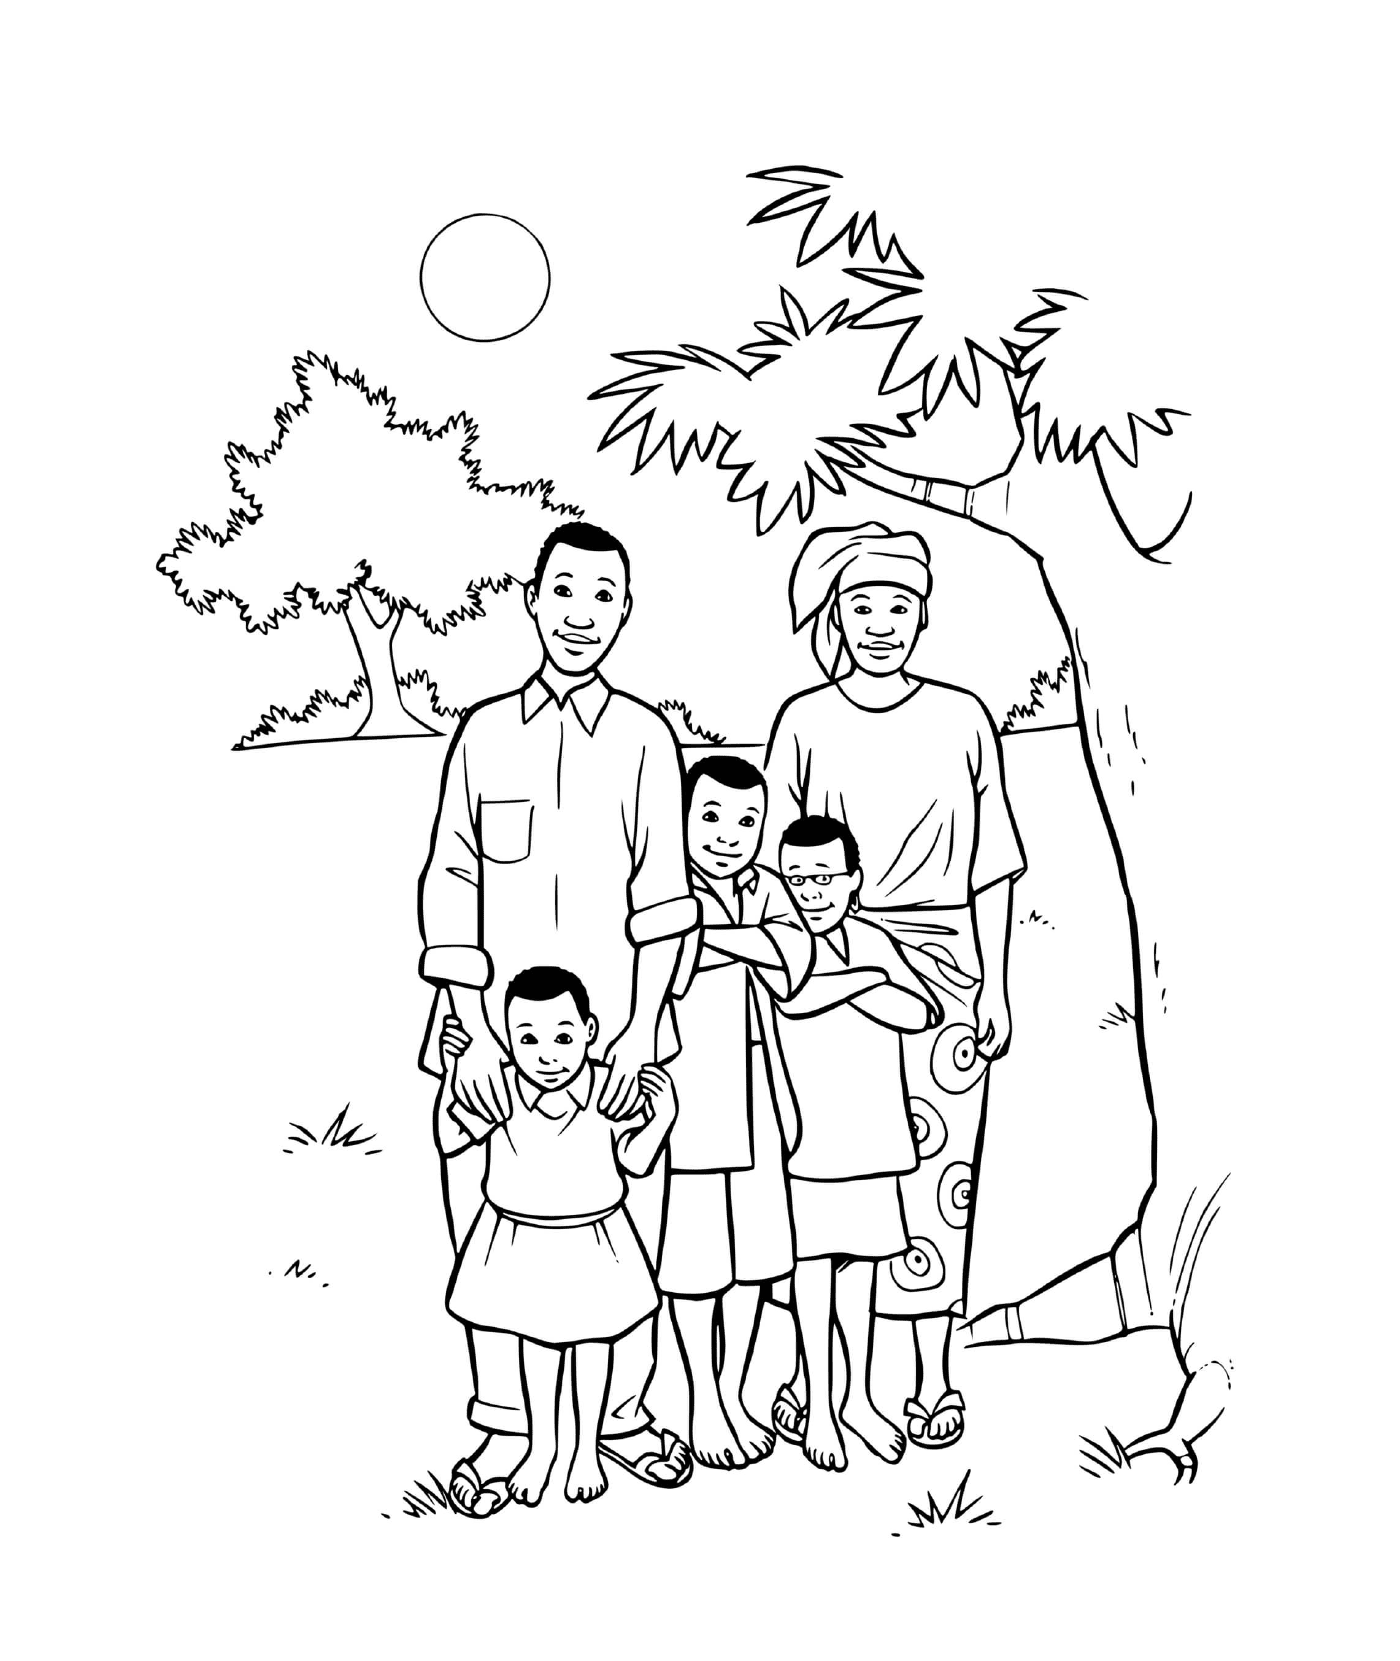   Une famille africaine avec trois enfants sous un arbre 